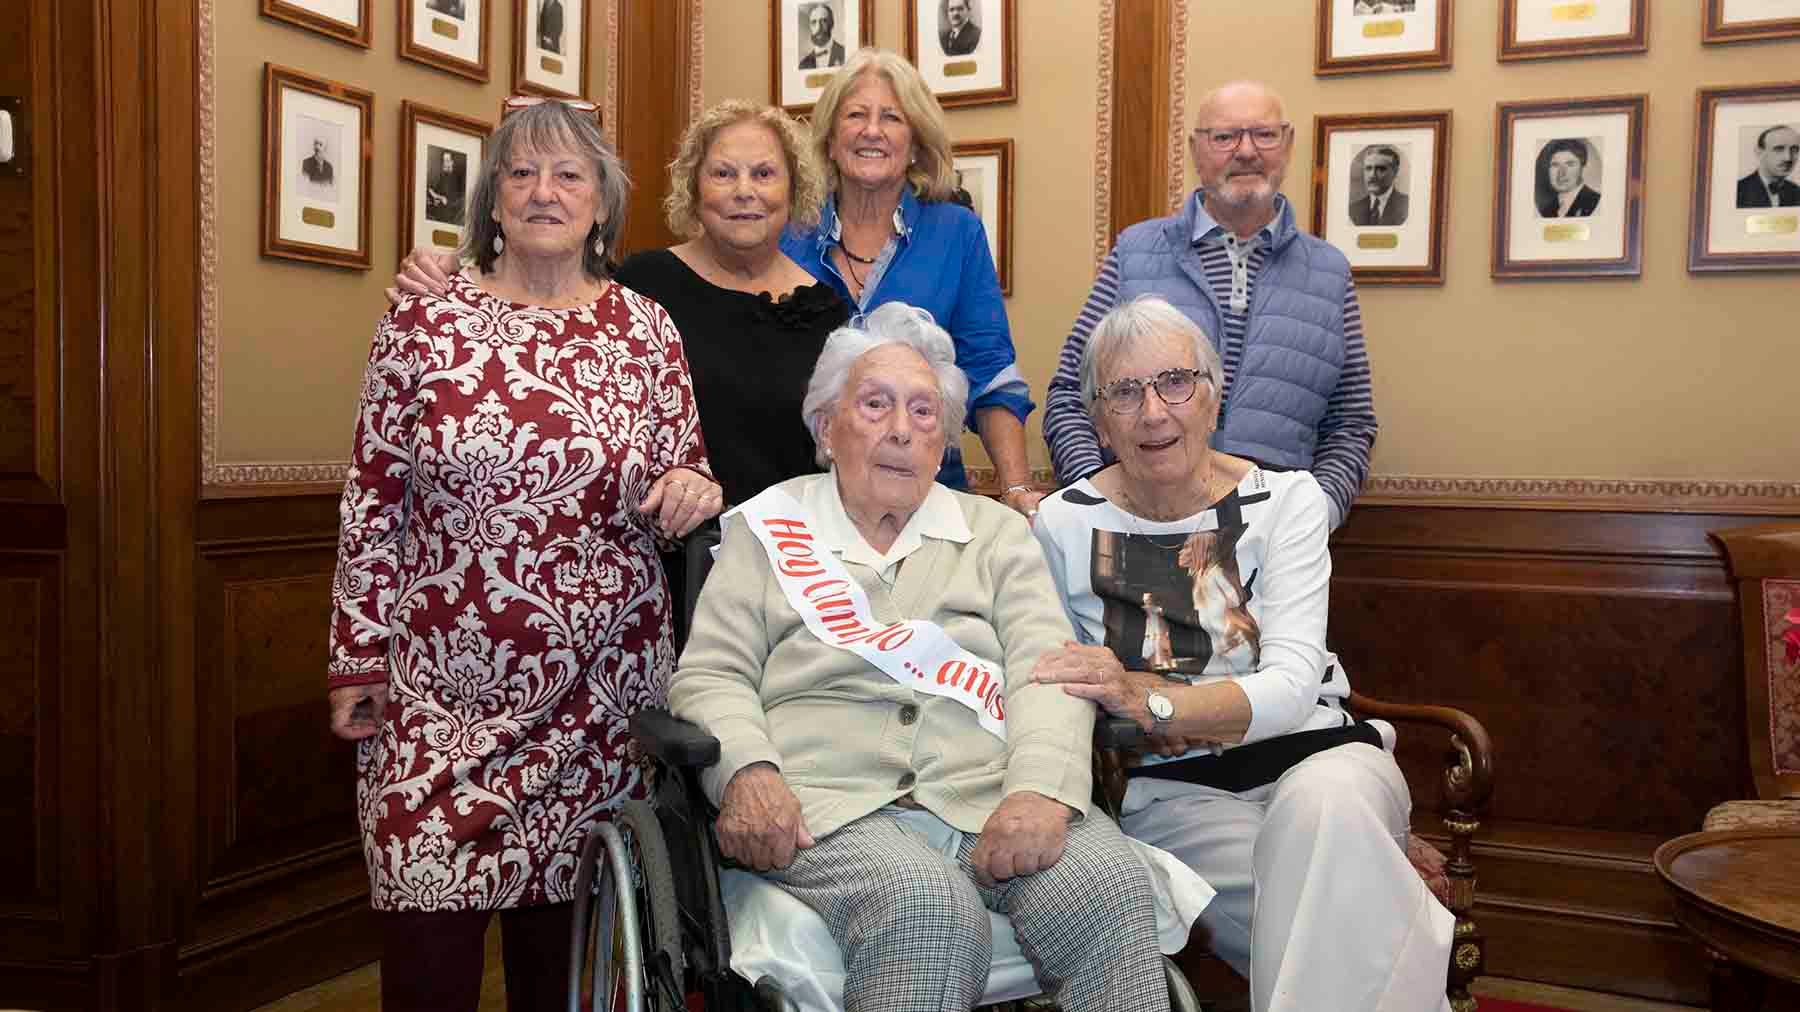 Tere, la abuela pamplonesa centenaria cargada de vitalidad que ha sido recibida en el Ayuntamiento